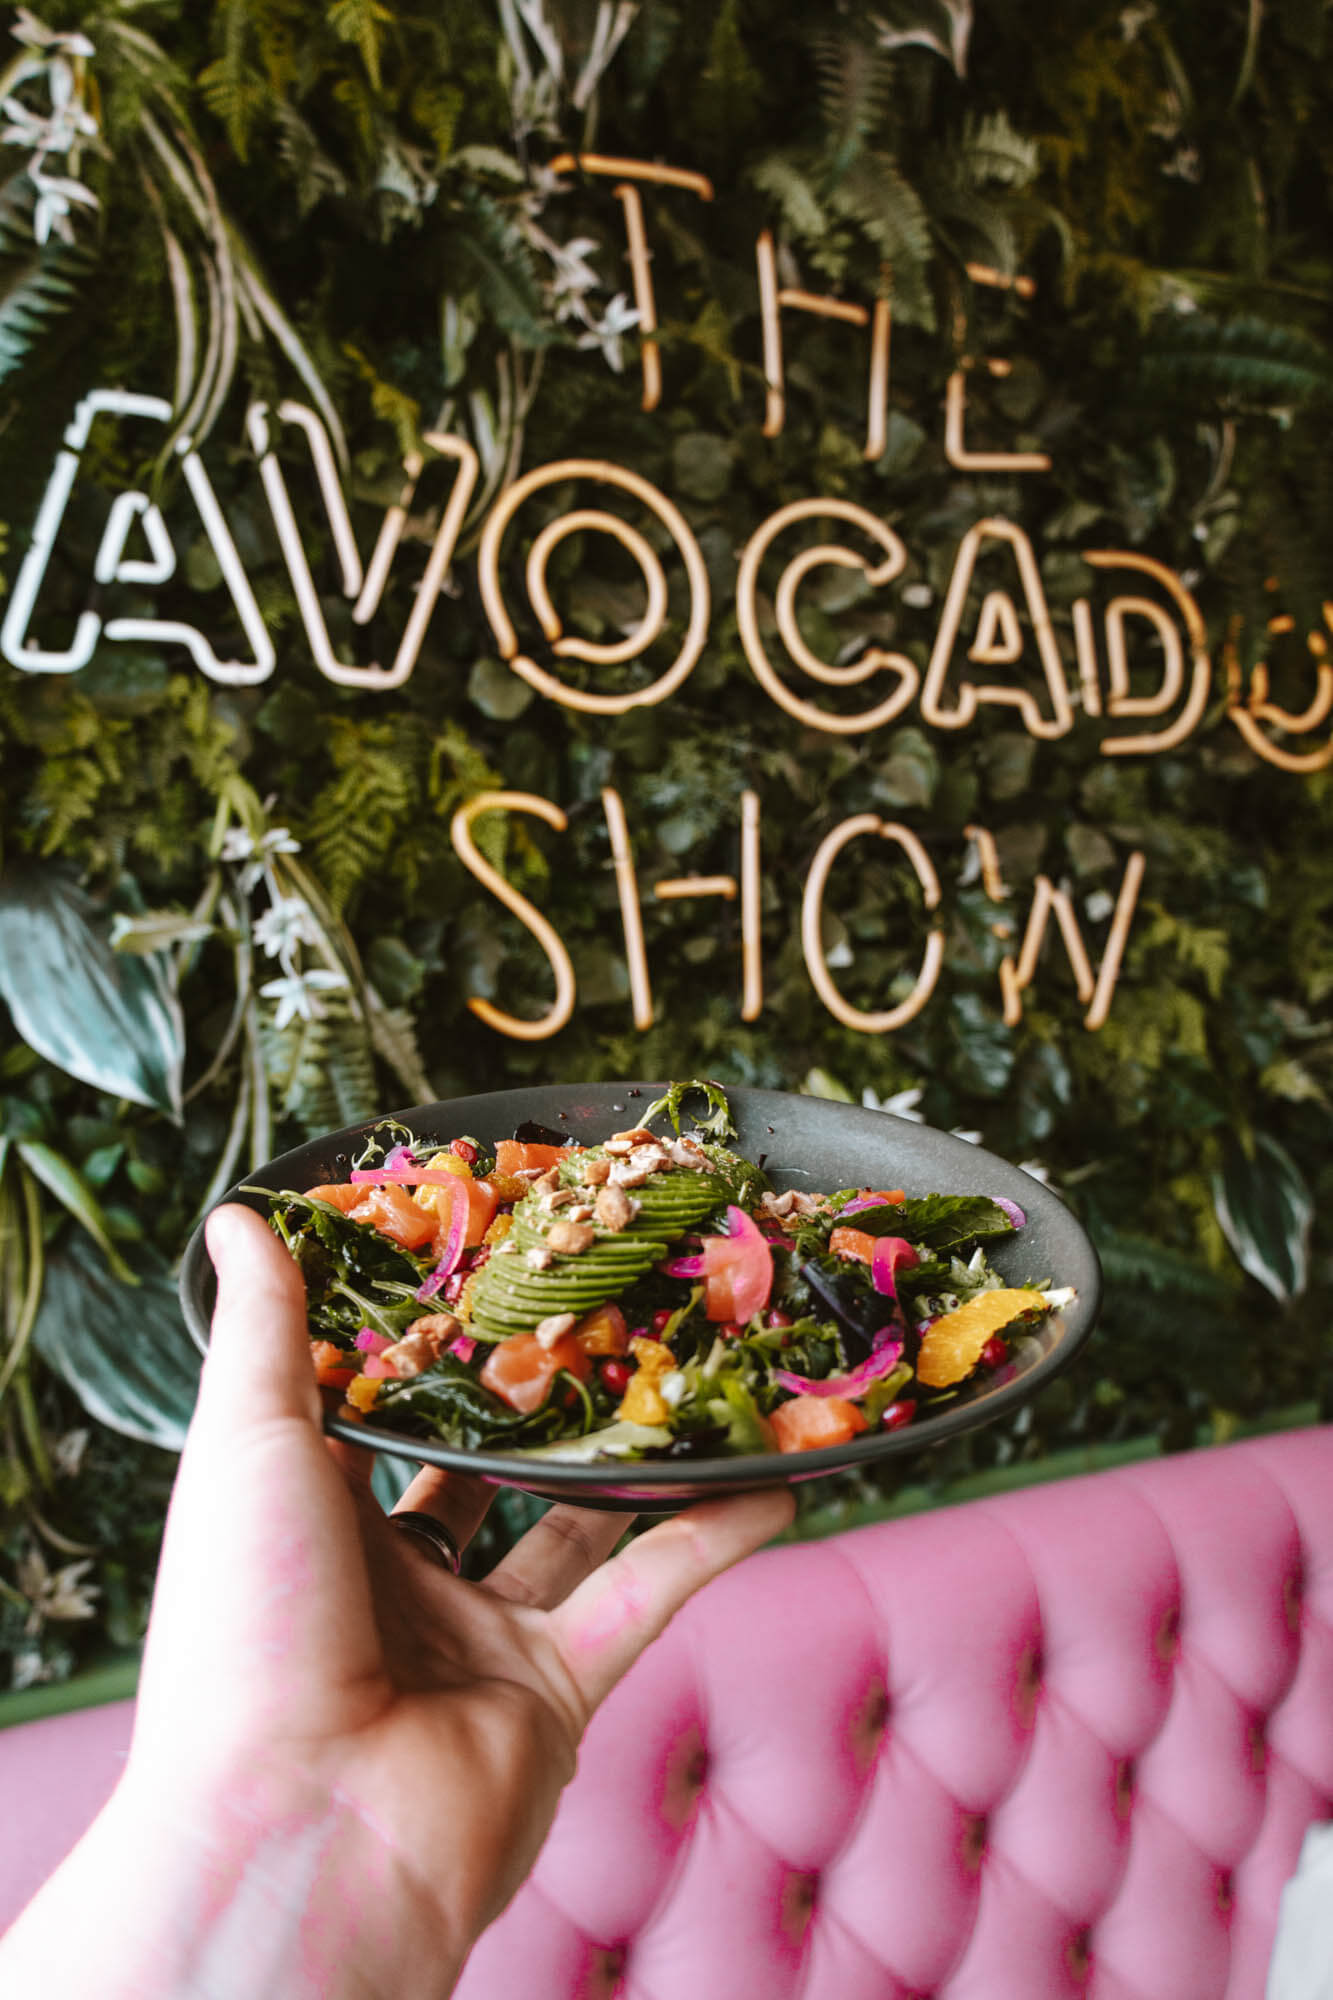 The Avocado Show - Amsterdam